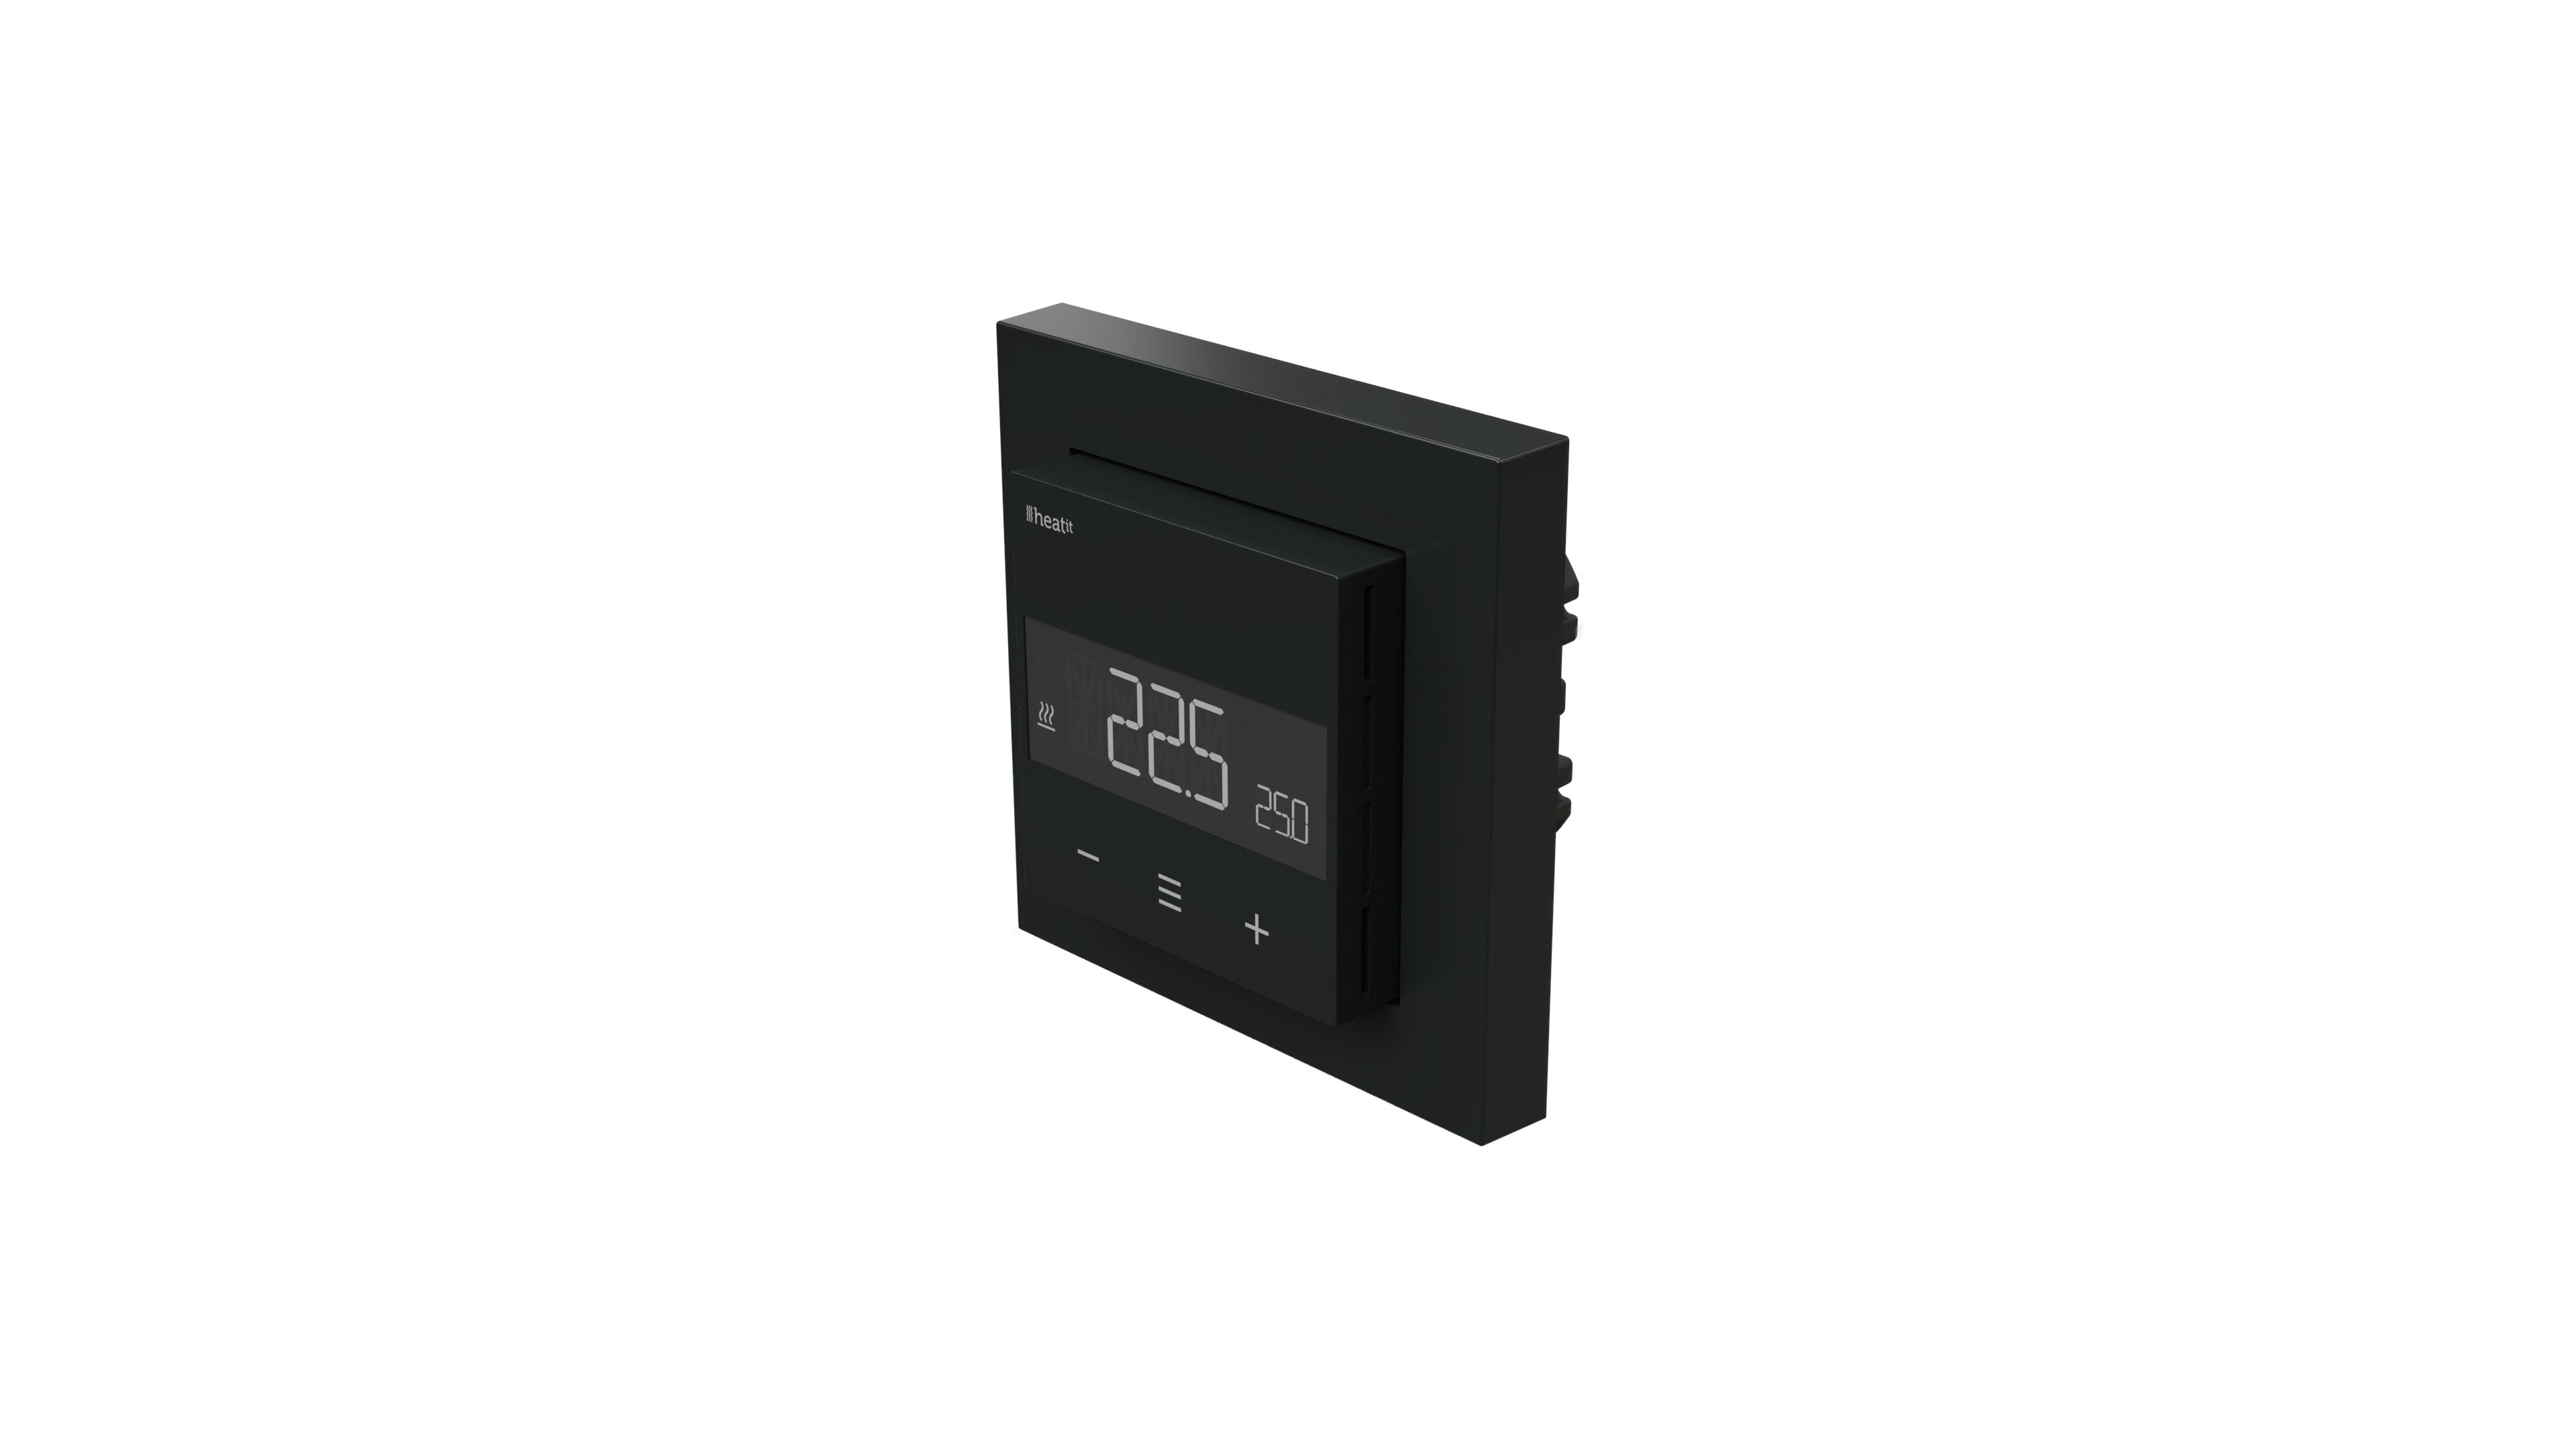 Heatit Z-TRM6 Black Z-Wave Electric Heating Thermostat 3600W 16A